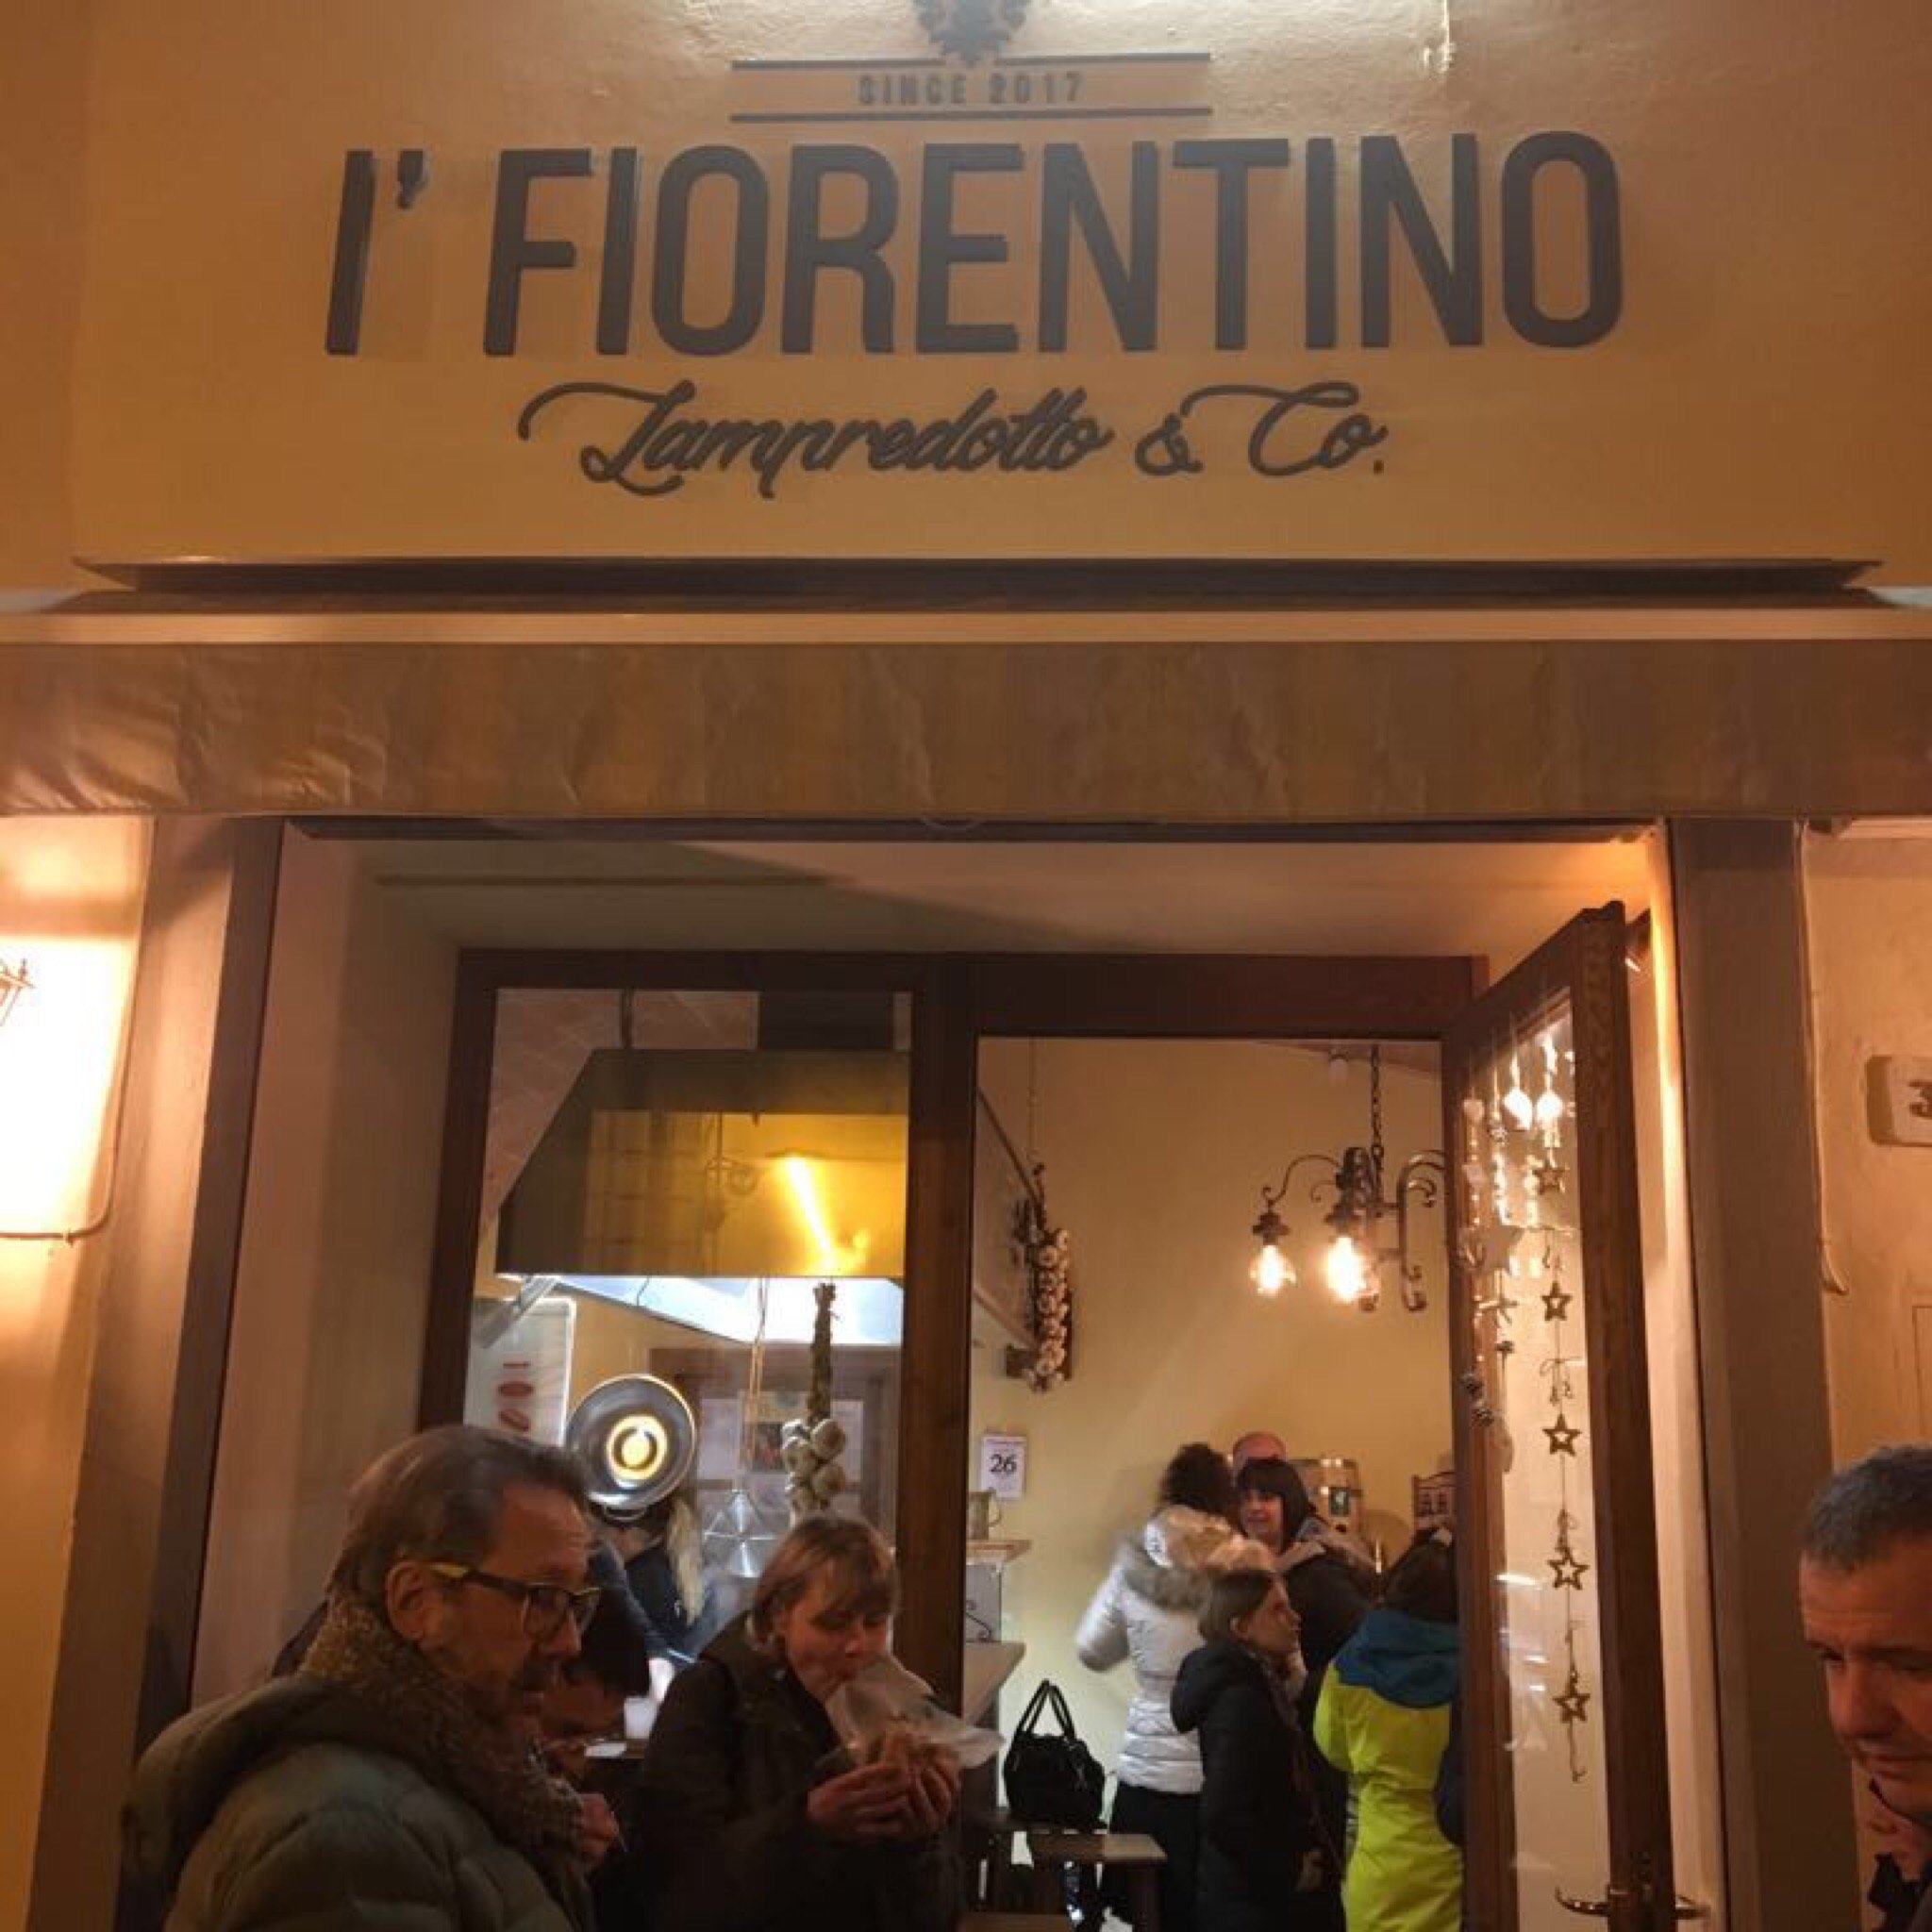 I' Fiorentino Lampredotto & Co., Tavarnelle Val di Pesa